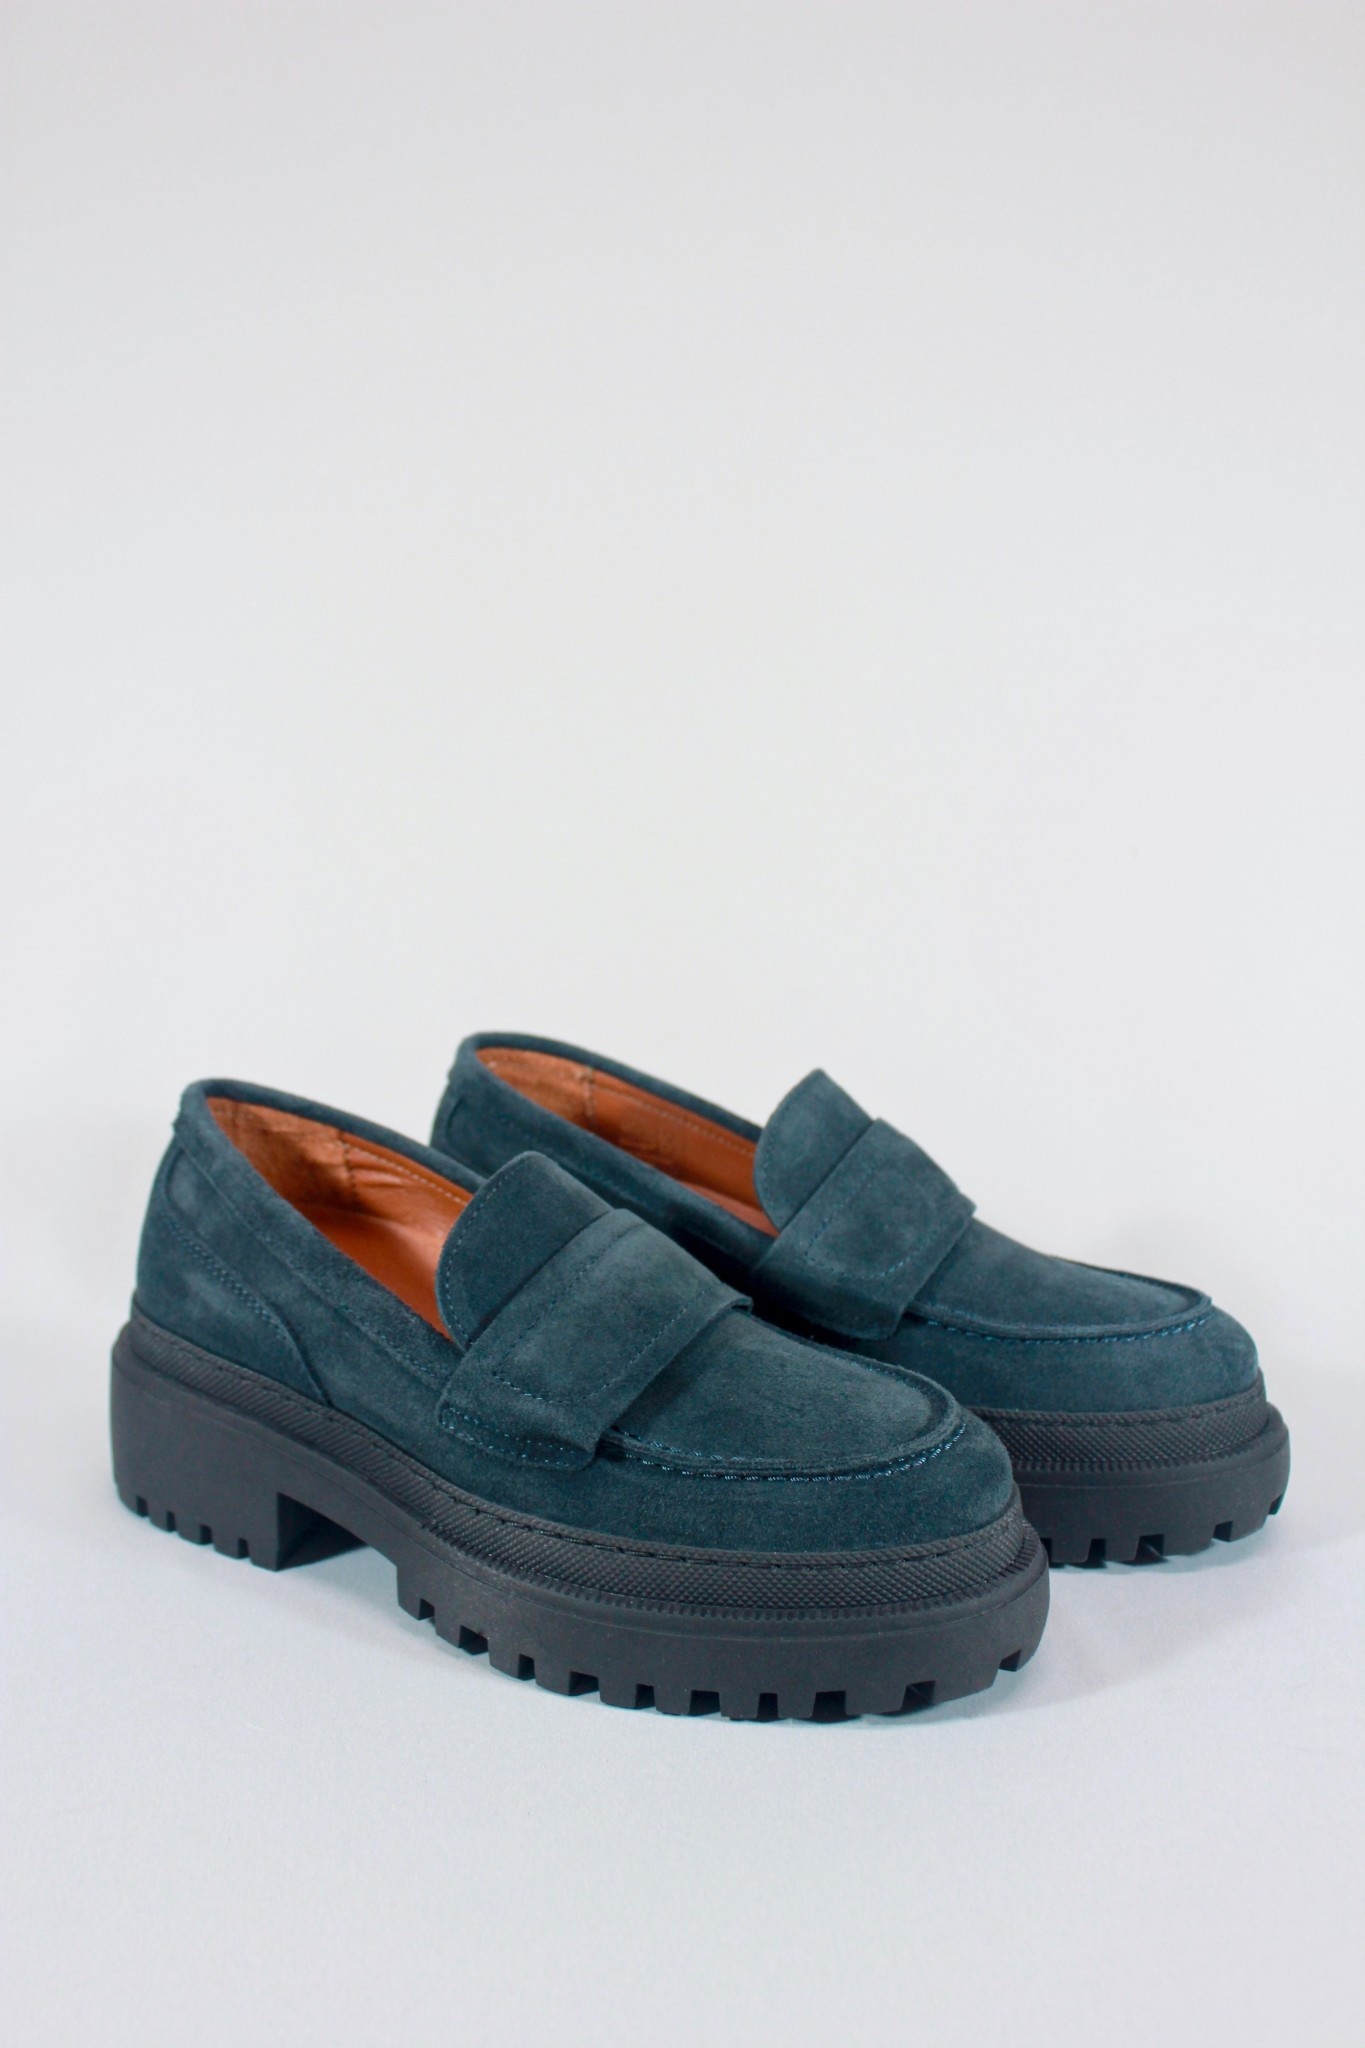 glas Perth Blackborough gået i stykker Shoe the Bear Iona Saddle Loafer - Dark Navy Suede - Footloose Shoes